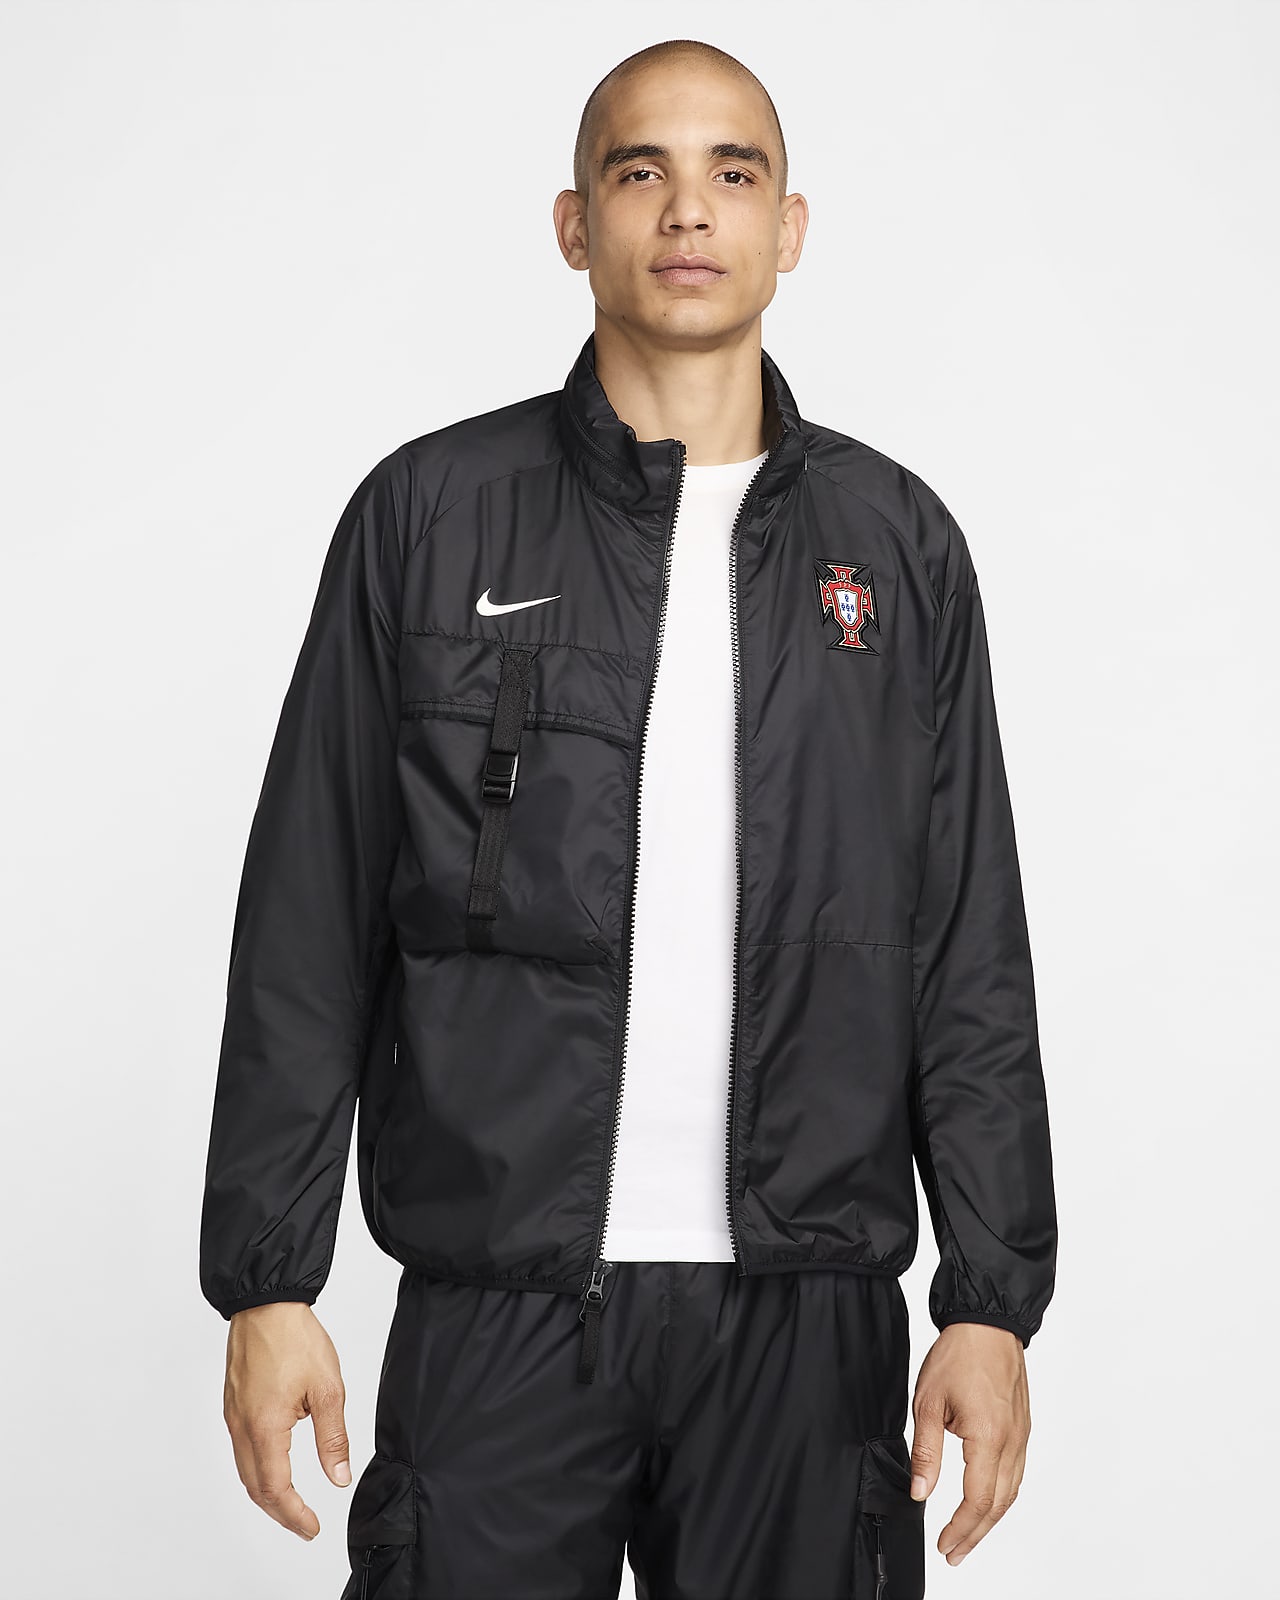 Giacca da calcio Nike Portogallo – Uomo